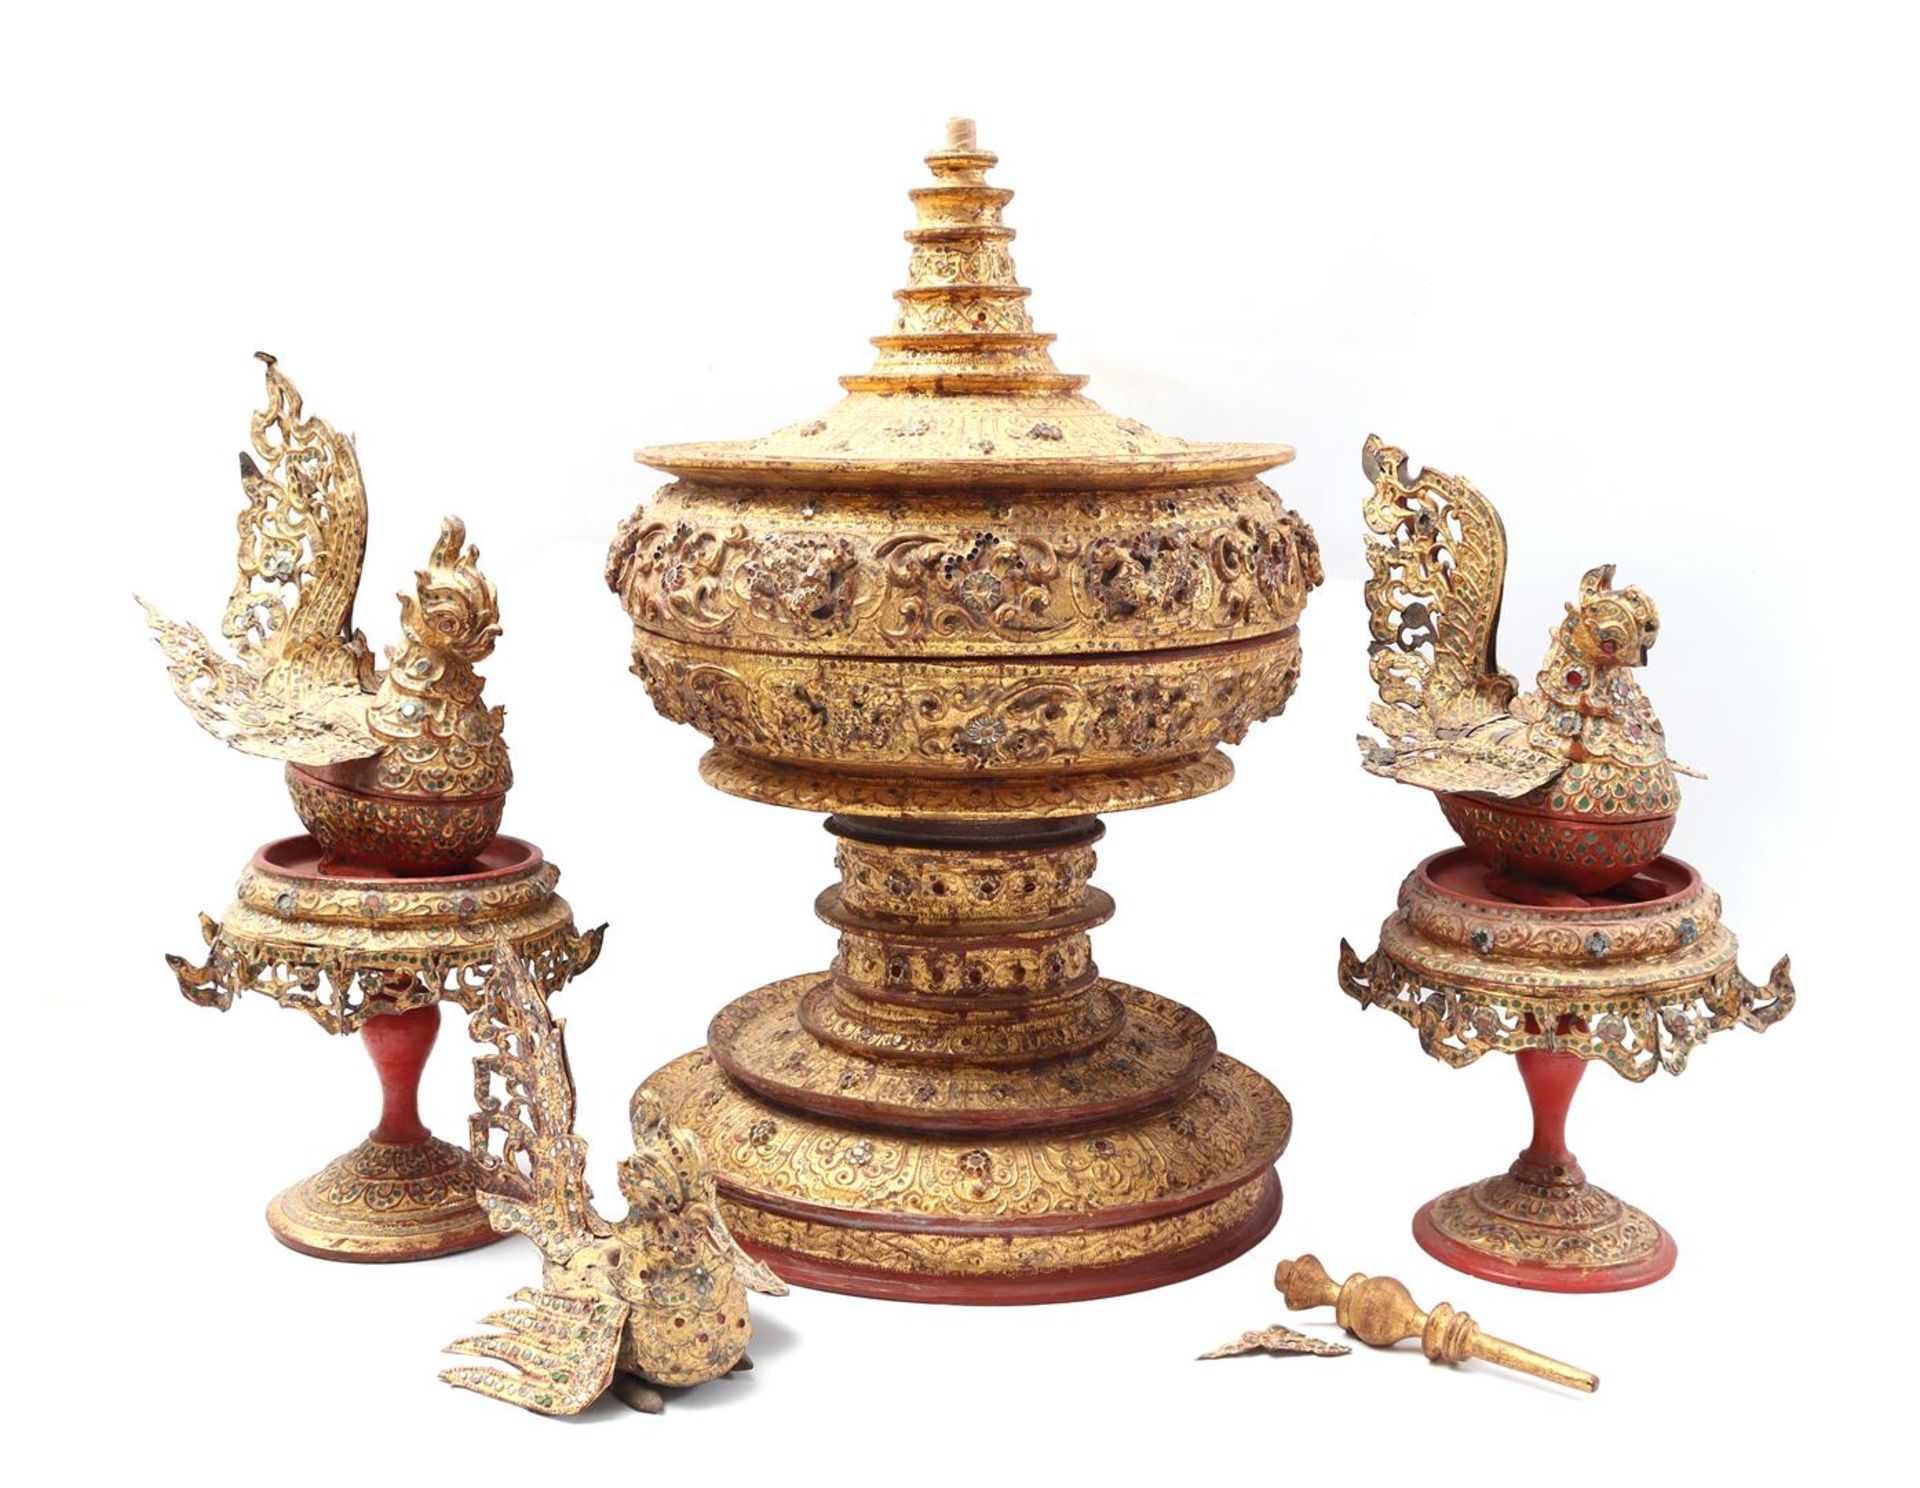 Burmese gold-coloured offering bowl set